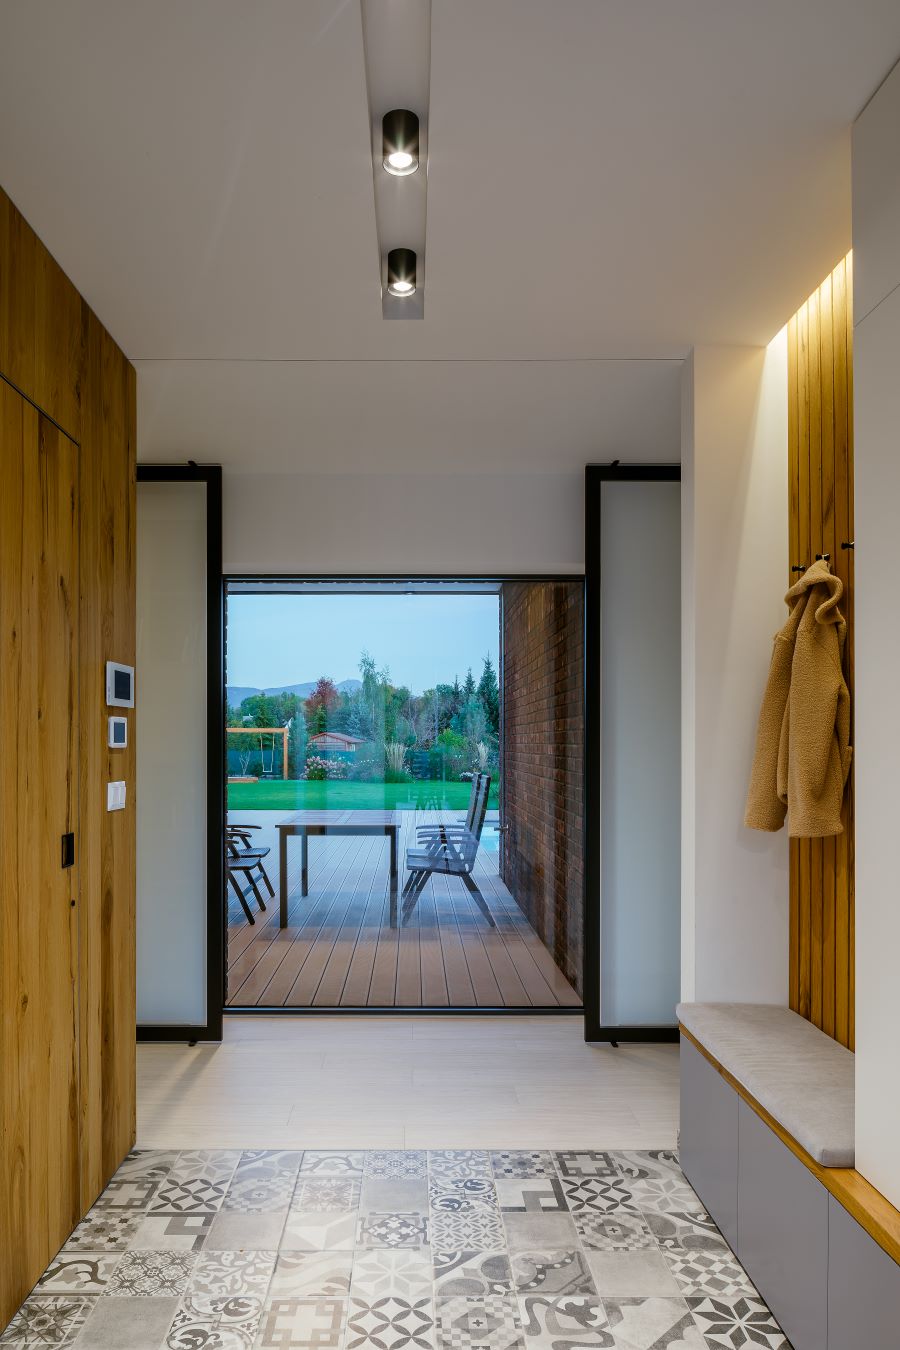 Nadčasovo zariadená vstupná časť domy s drevom obloženou i vešiakovou stenou a veľkorozmerným oknom s výhľadom na terasu.